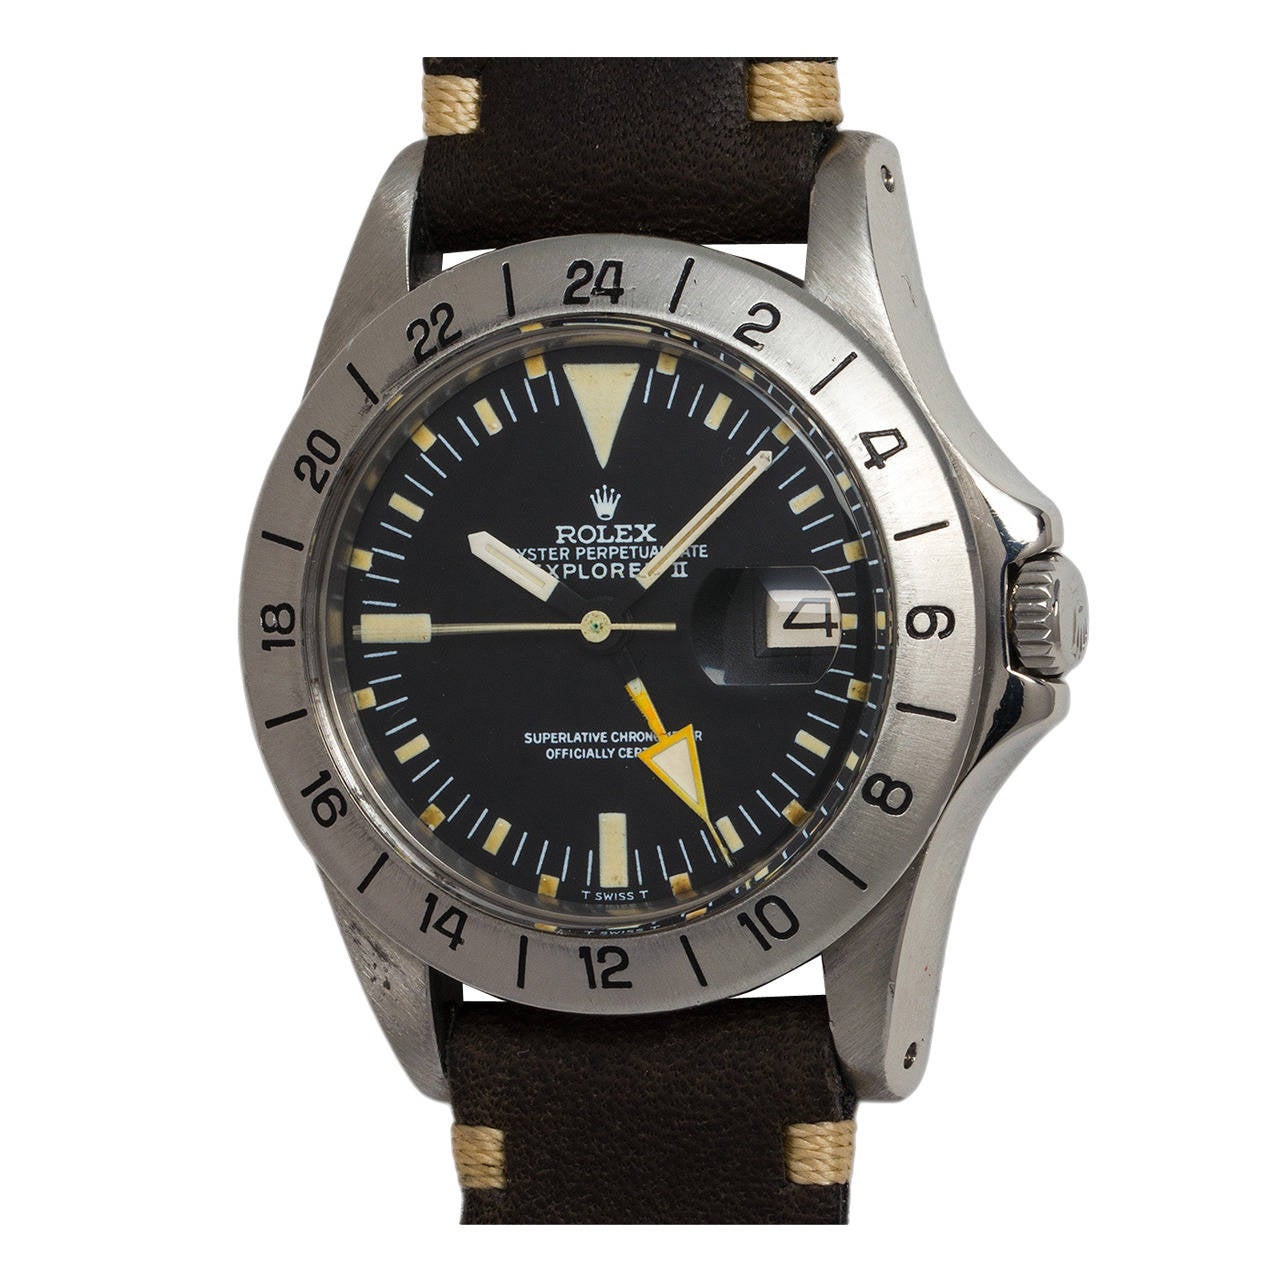 Rolex Stainless Steel Explorer II Wristwatch Ref 1655